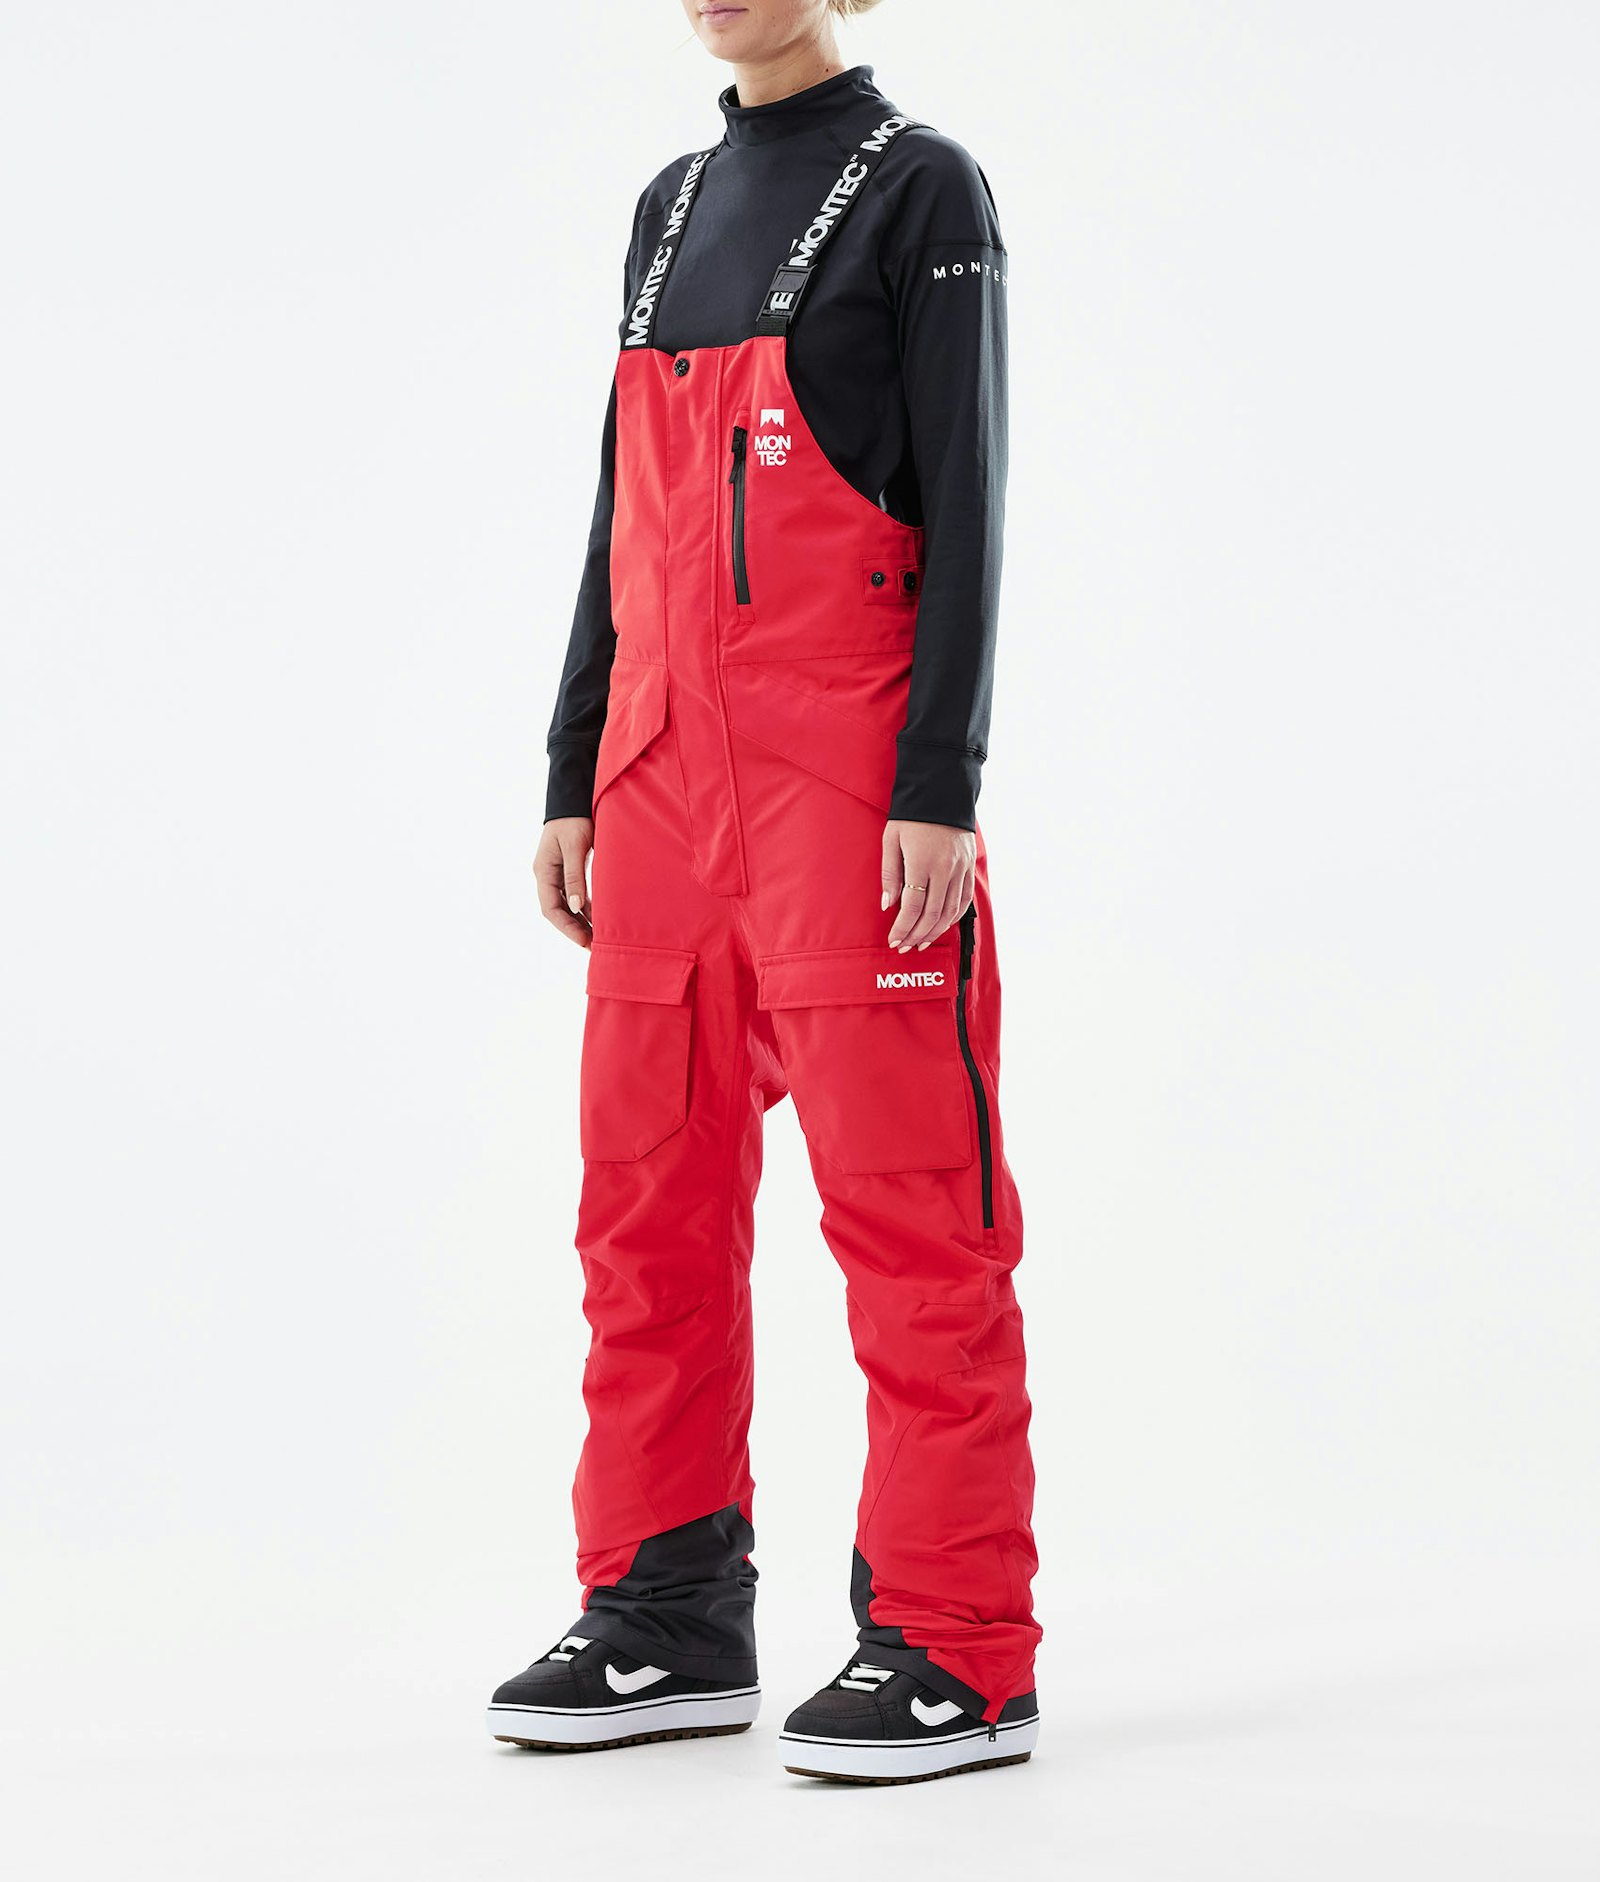 Fawk W 2021 Snowboard Pants Women Red Renewed, Image 1 of 6